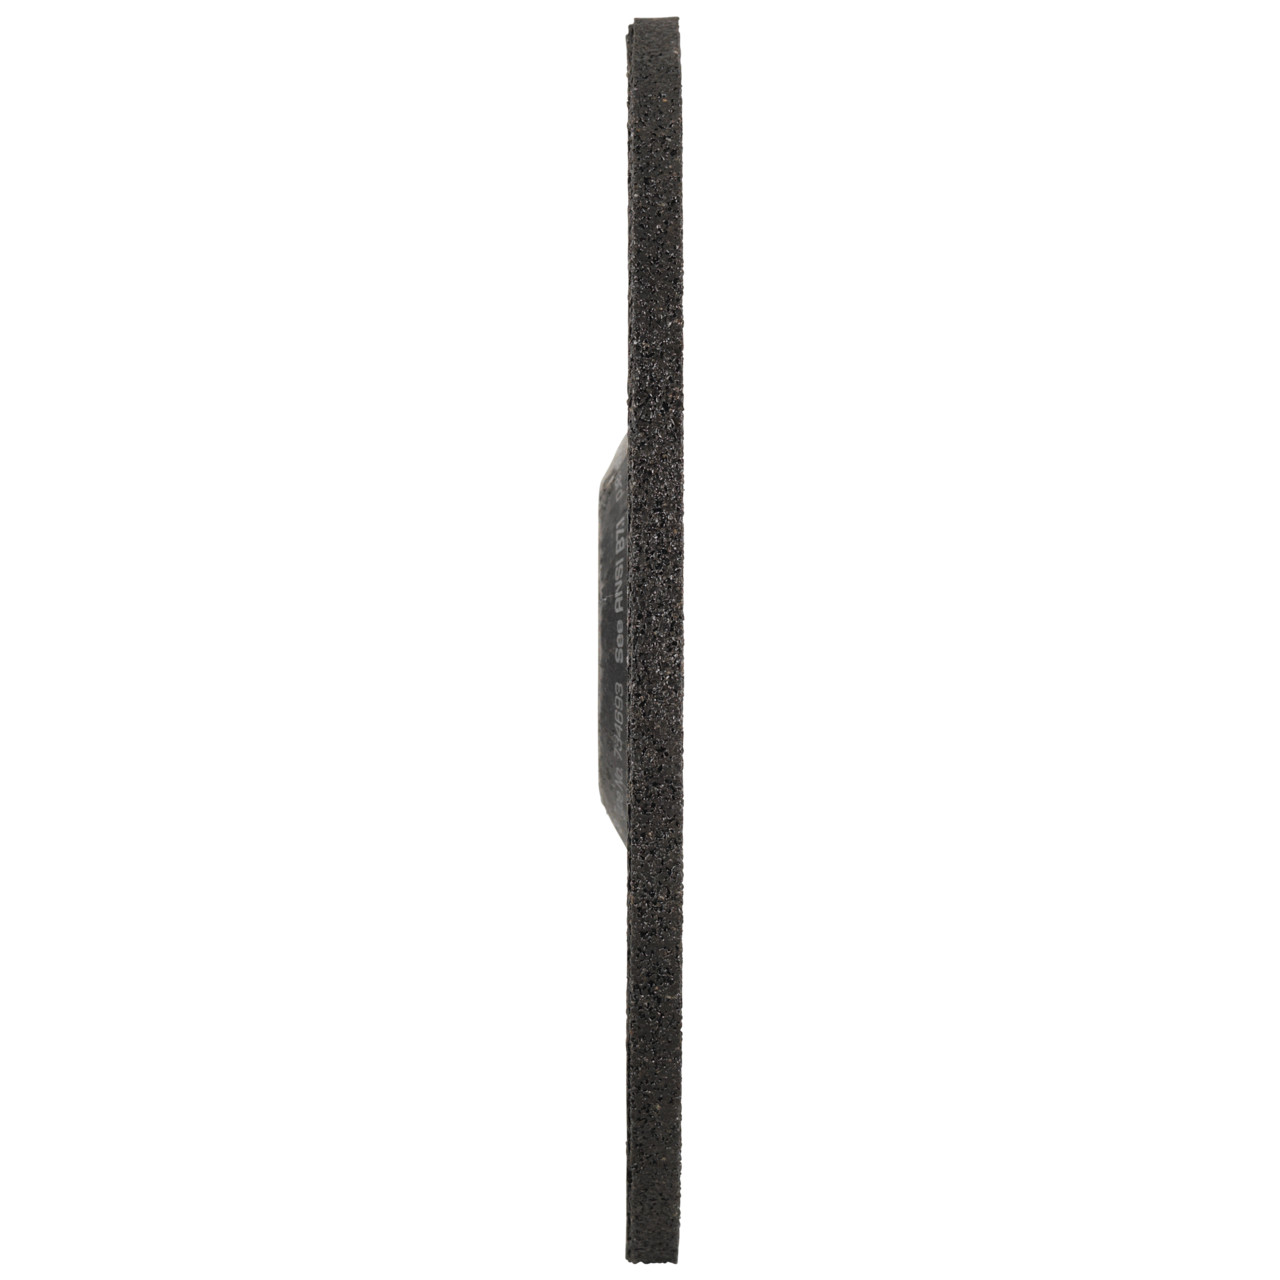 Tyrolit Grove slijpschijf DxUxH 178x8x22,23 FASTCUT Basic voor staal en roestvast staal, vorm: 27C - offset uitvoering, Art. 34468720